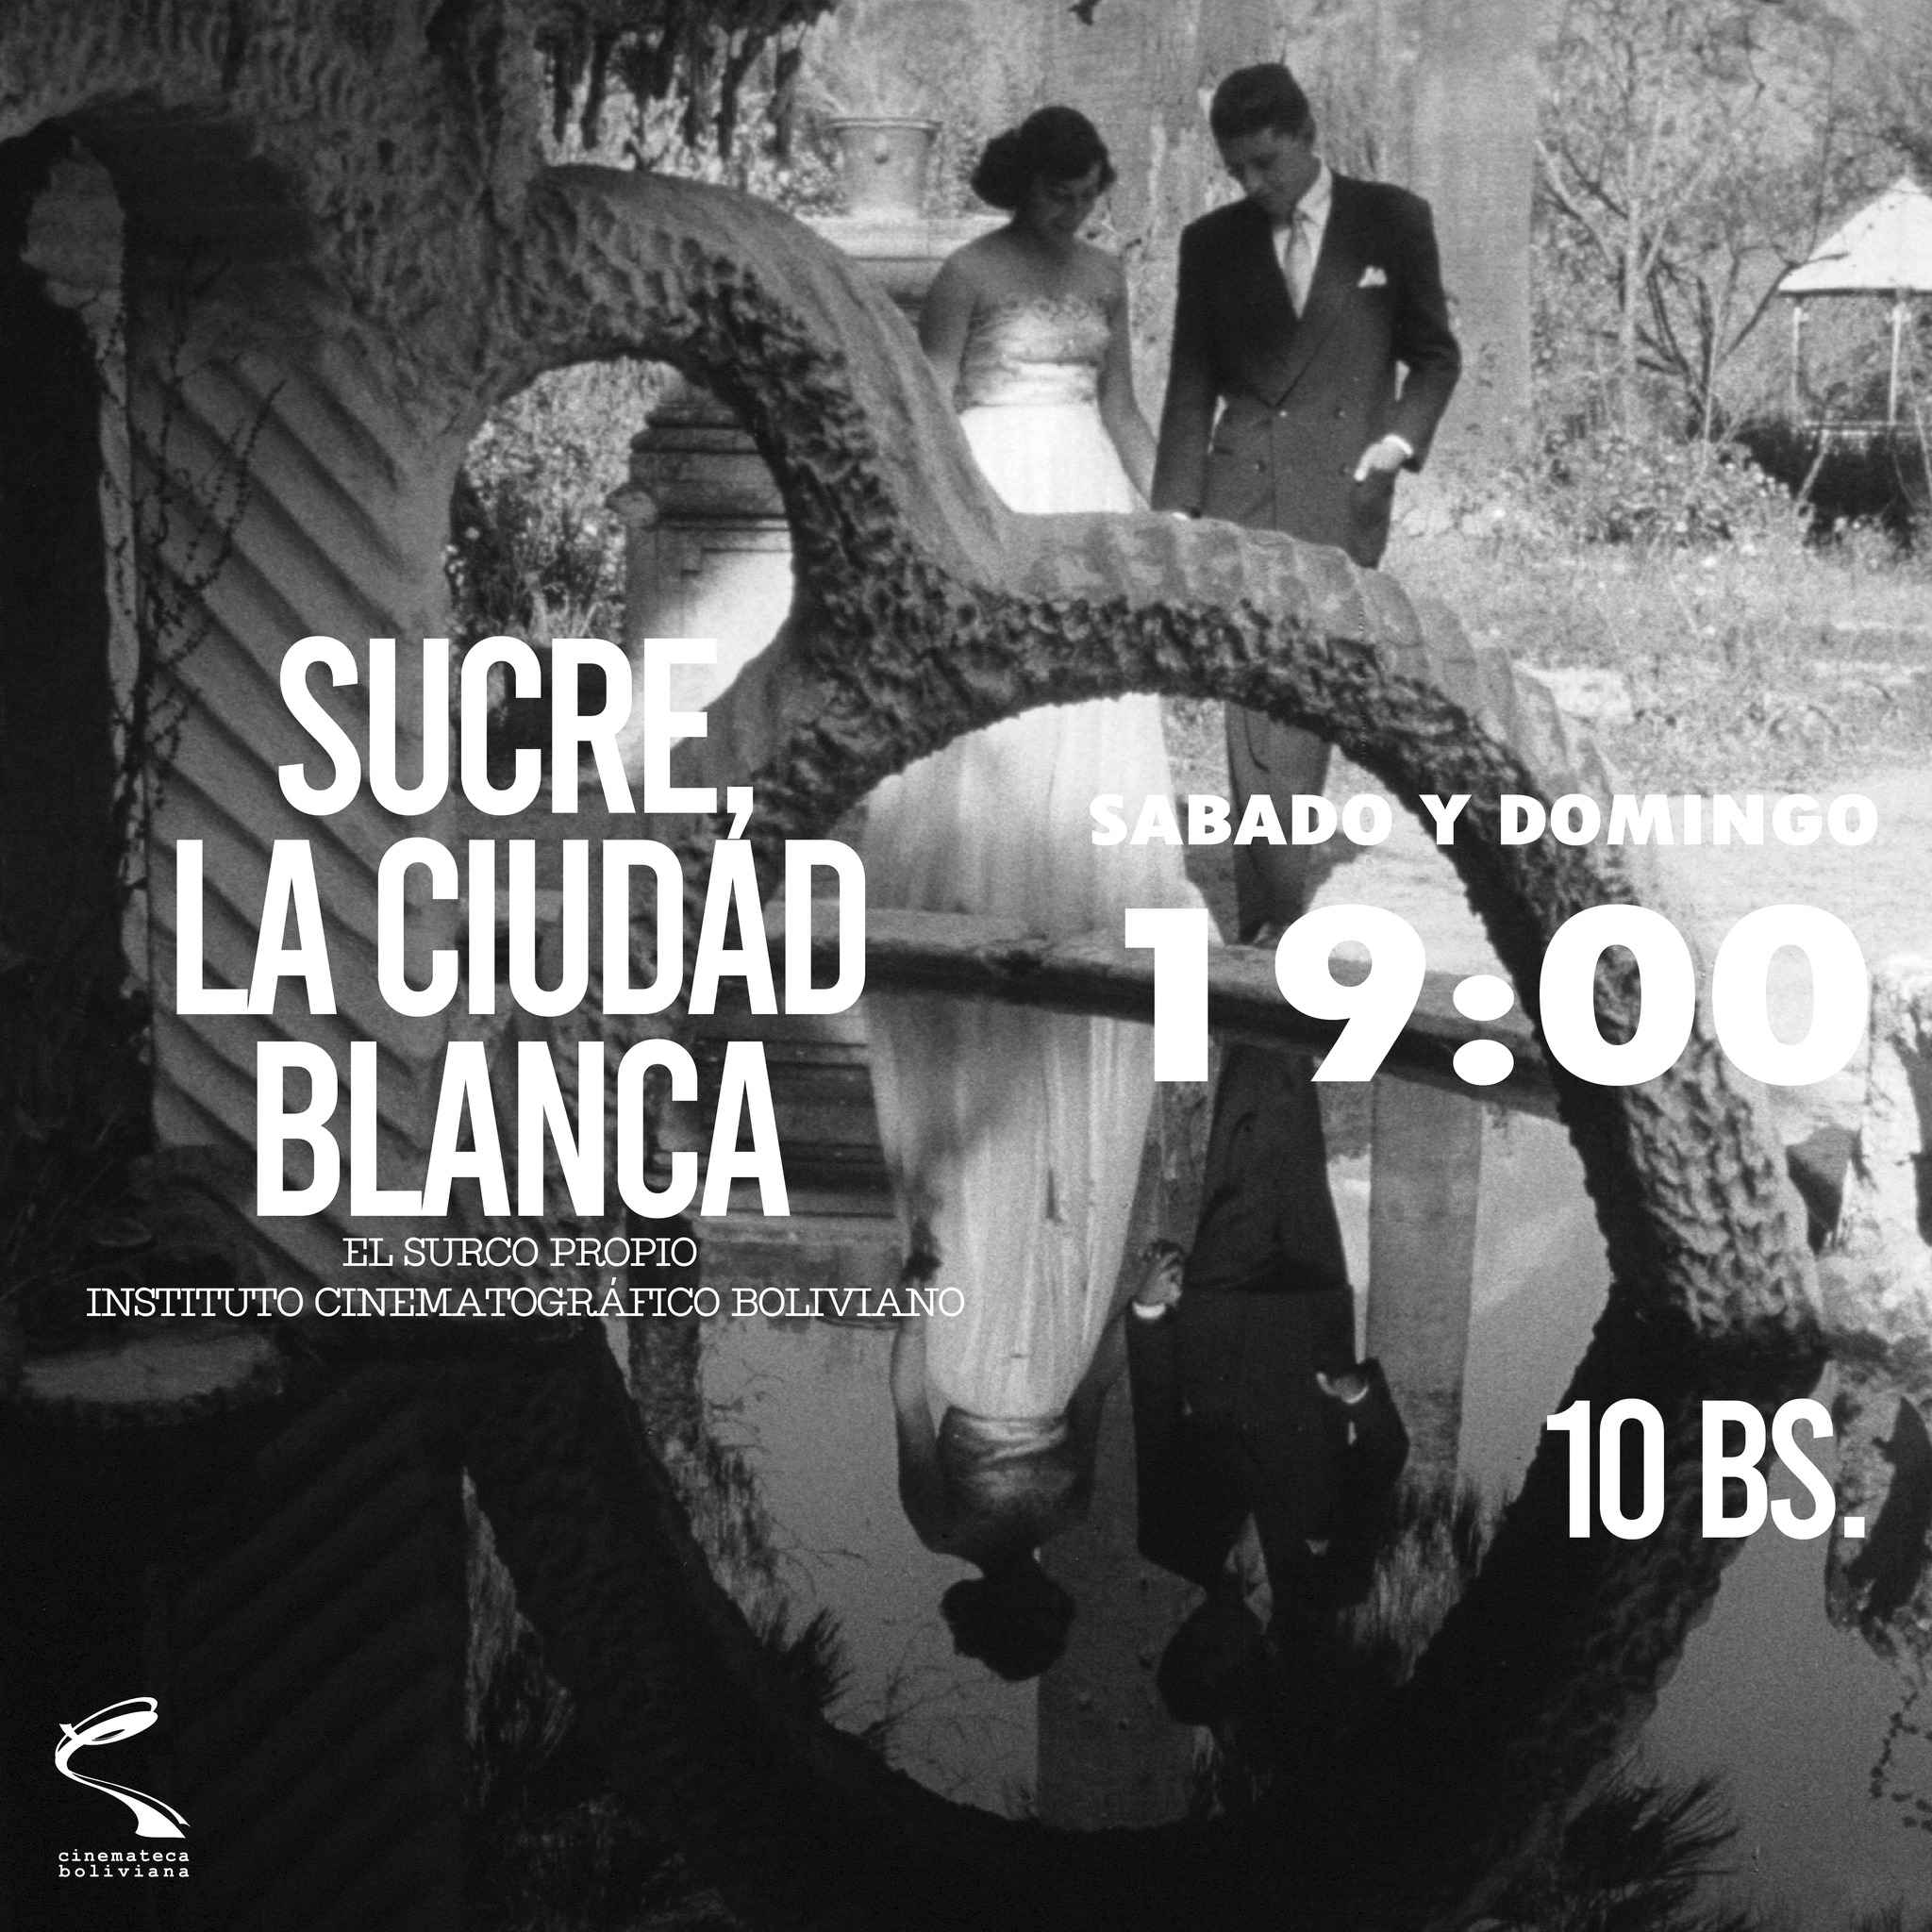 SUCRE LA CIUDAD BLANCA – Cinemateca Boliviana